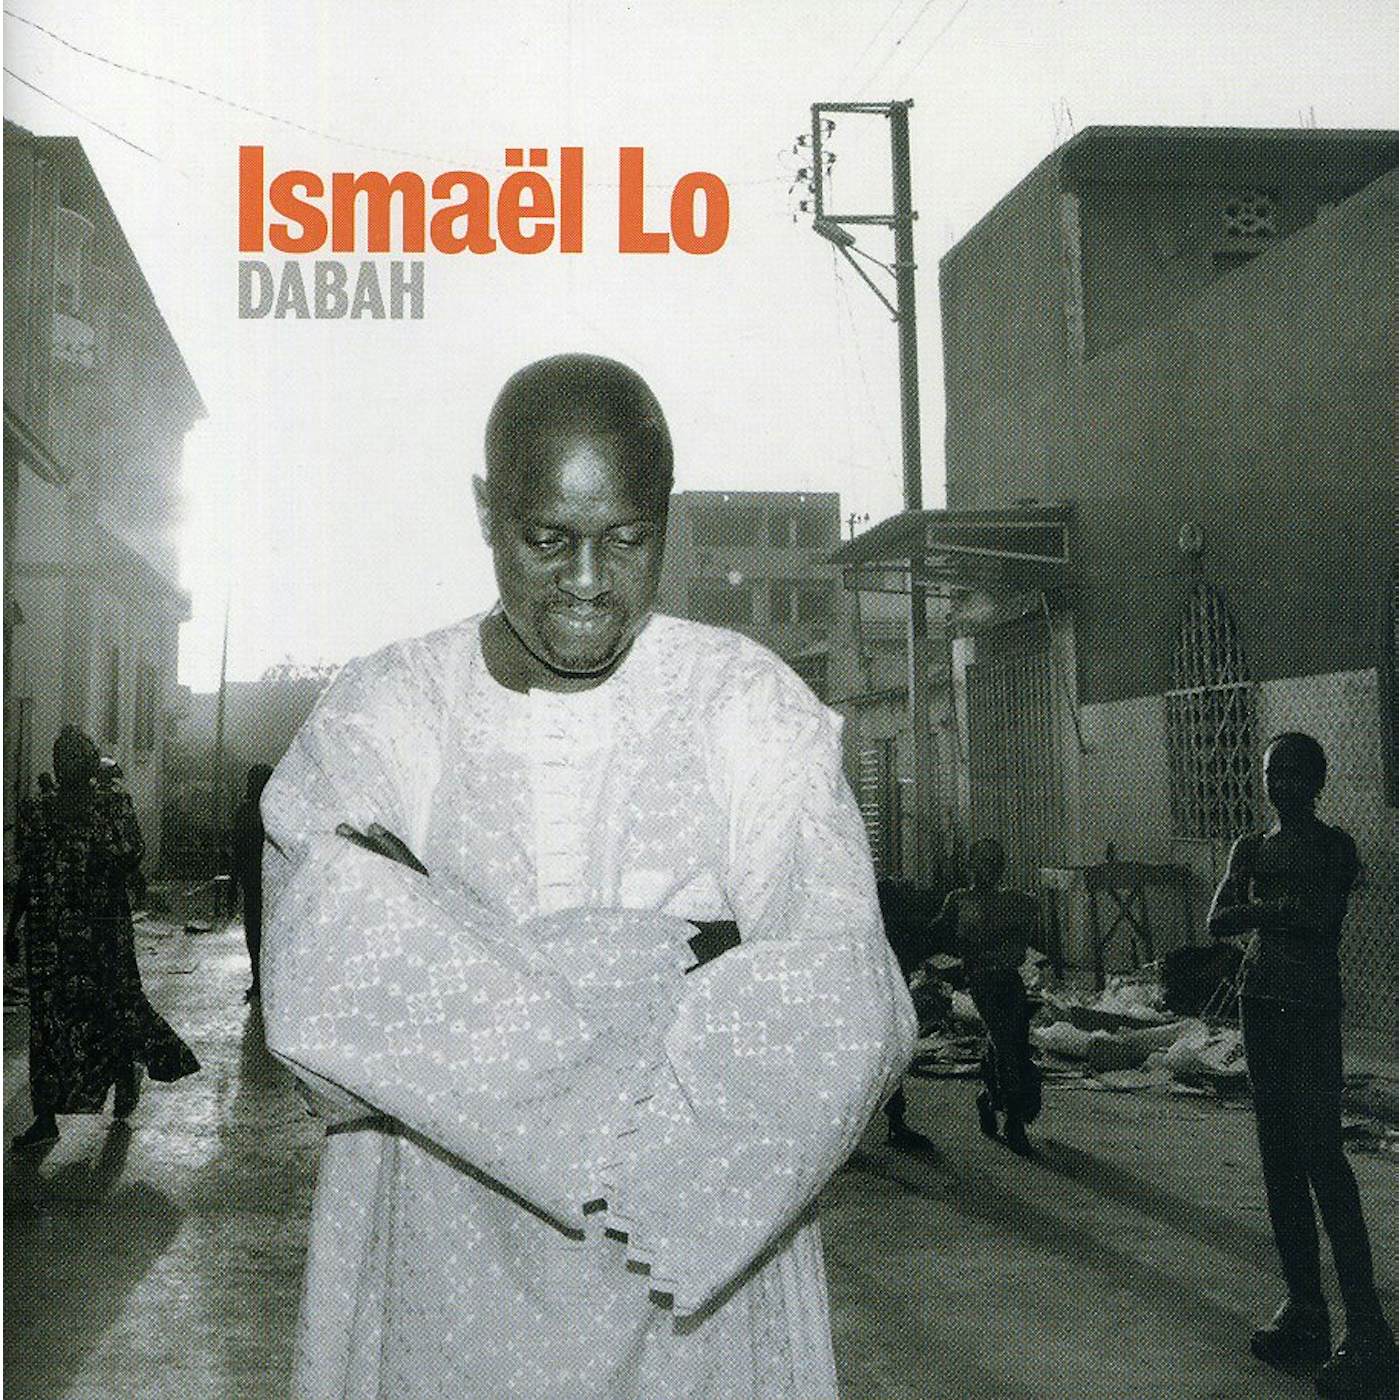 Ismaël Lô DABAH CD